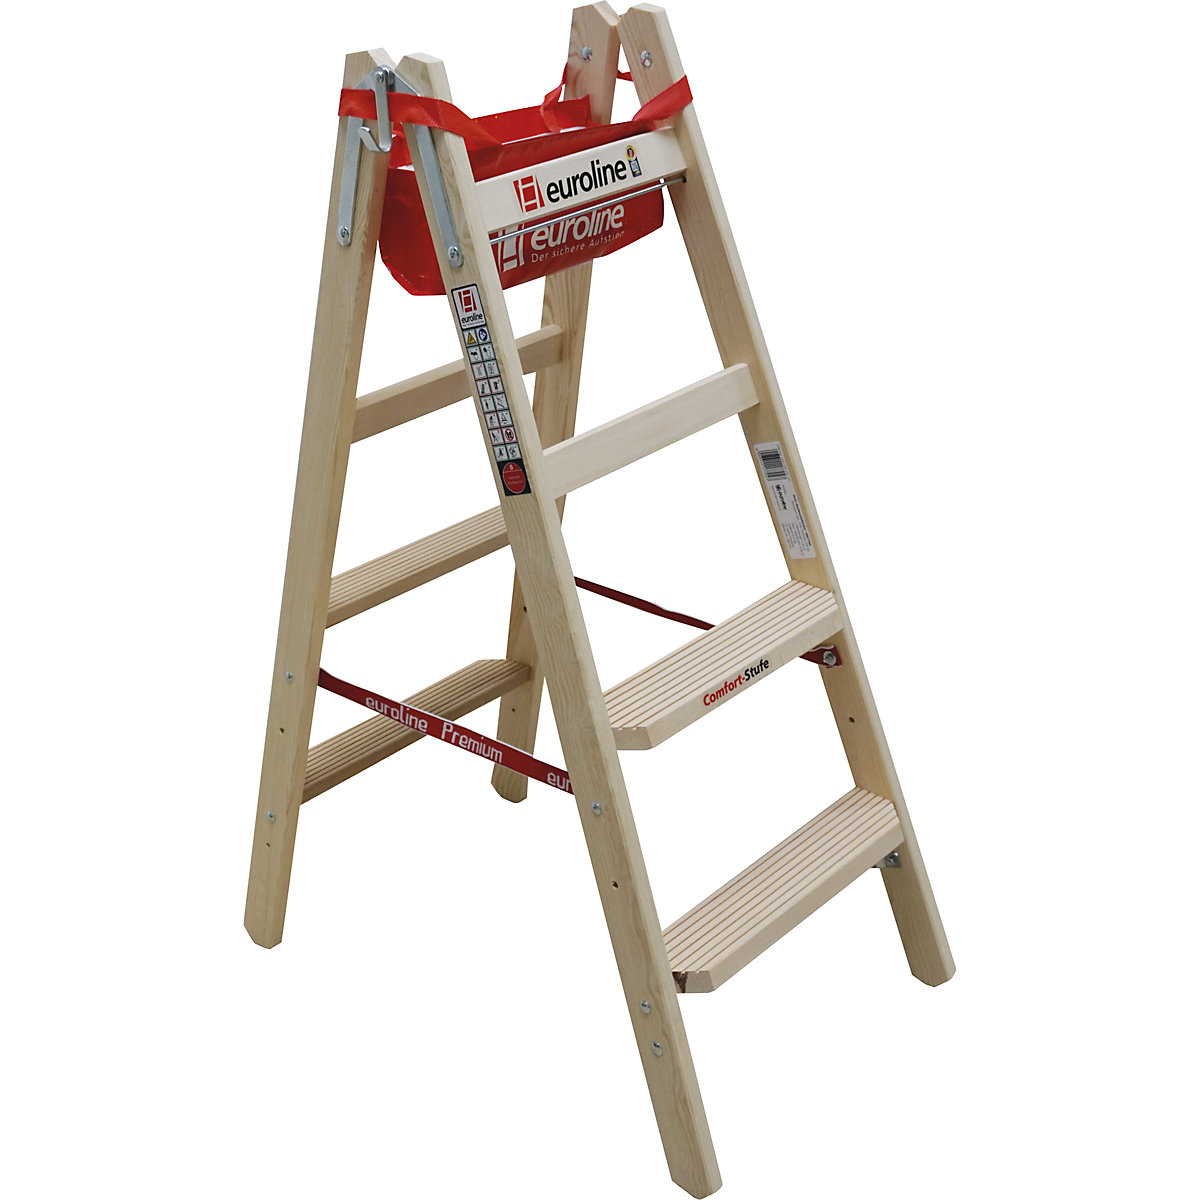 Wooden step ladder with comfort steps - euroline